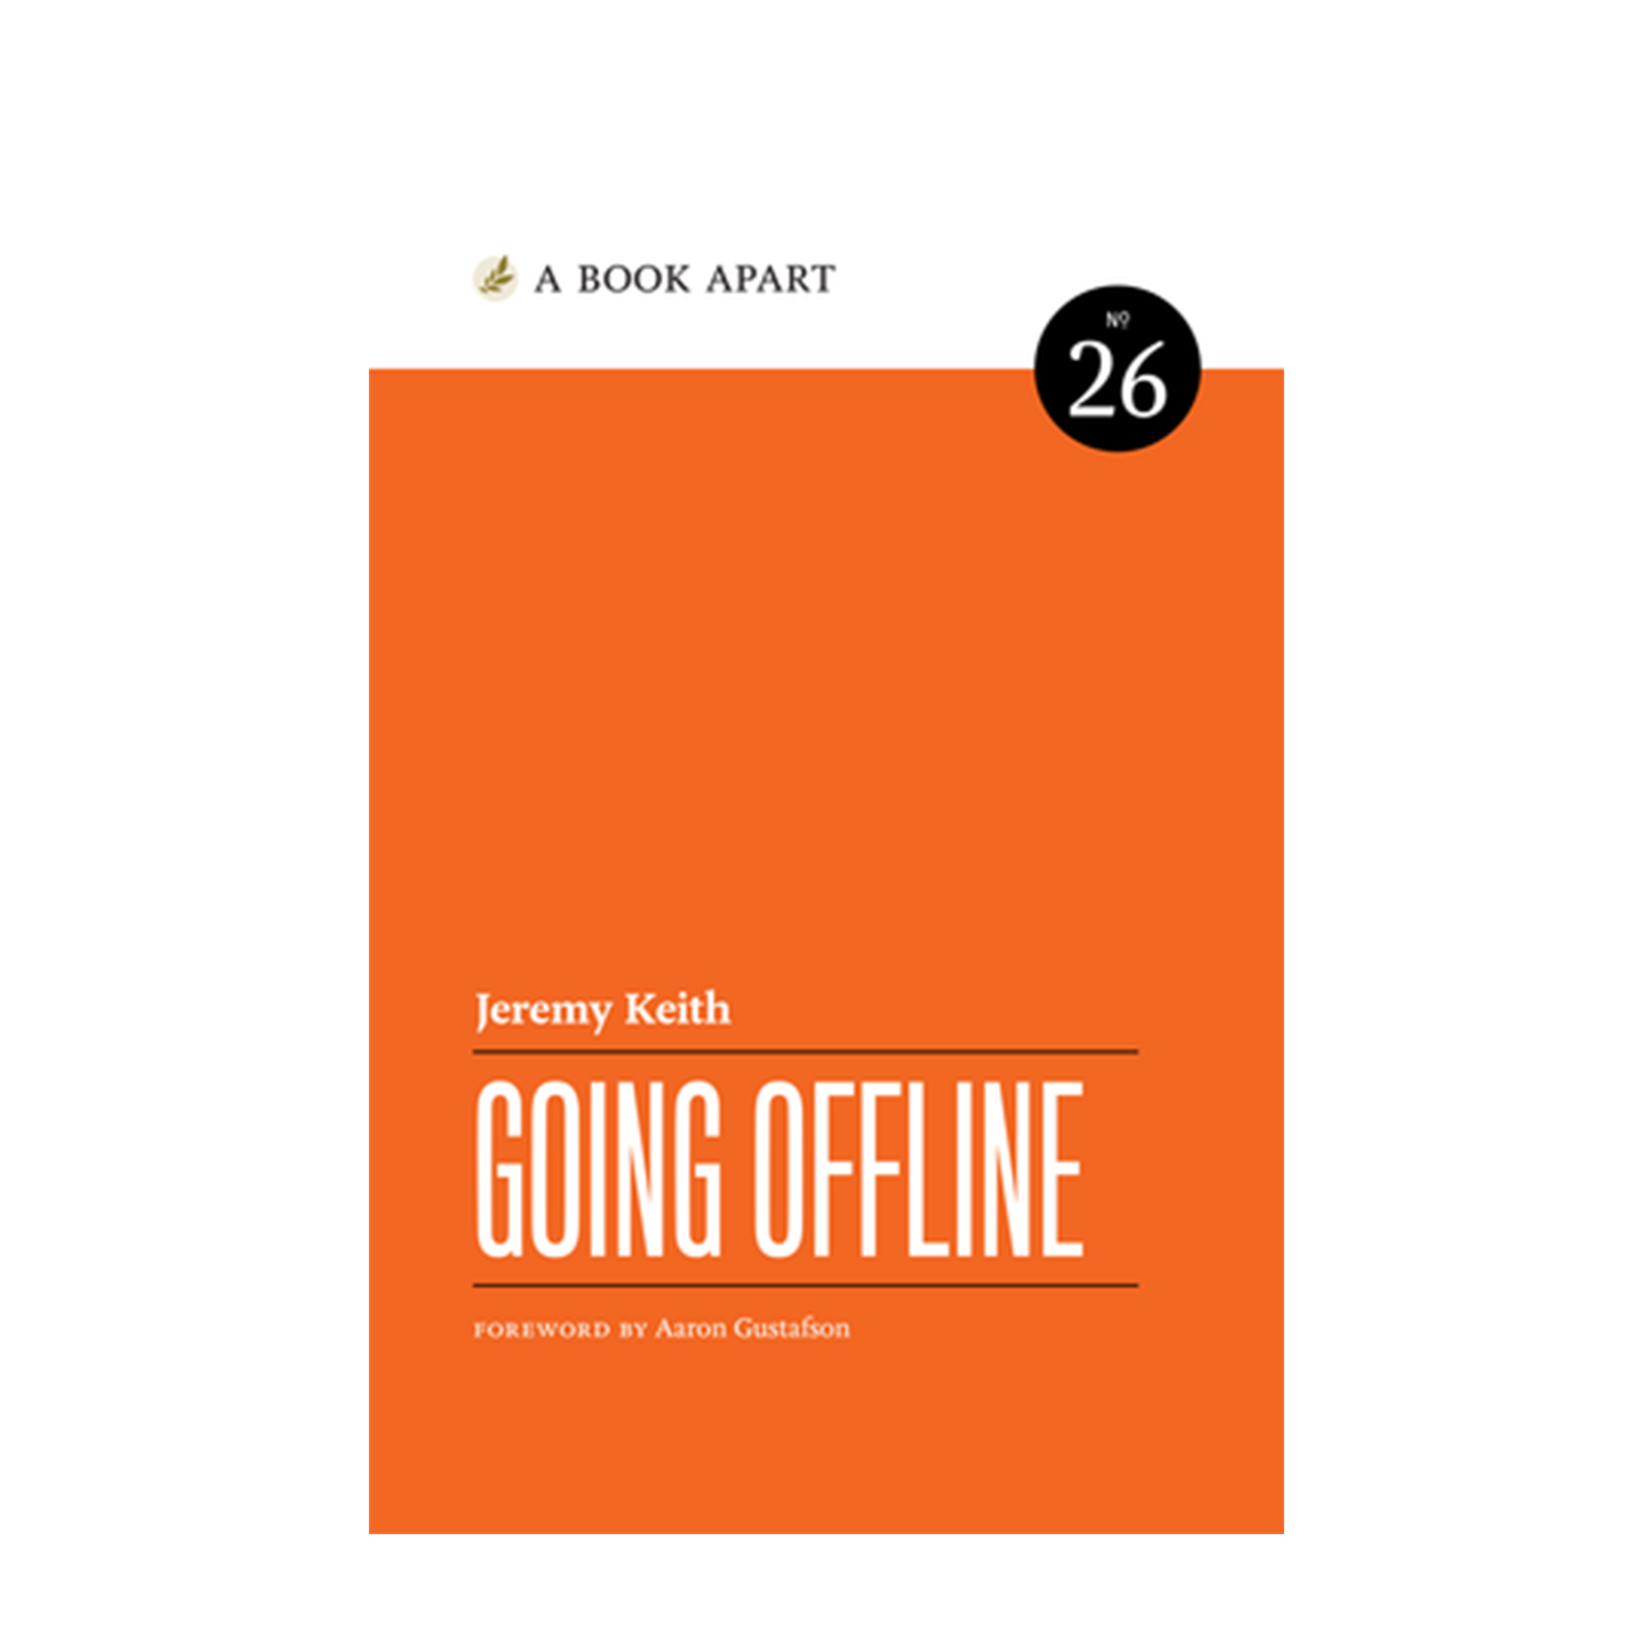 A Book Apart: Going Offline (No. 26)